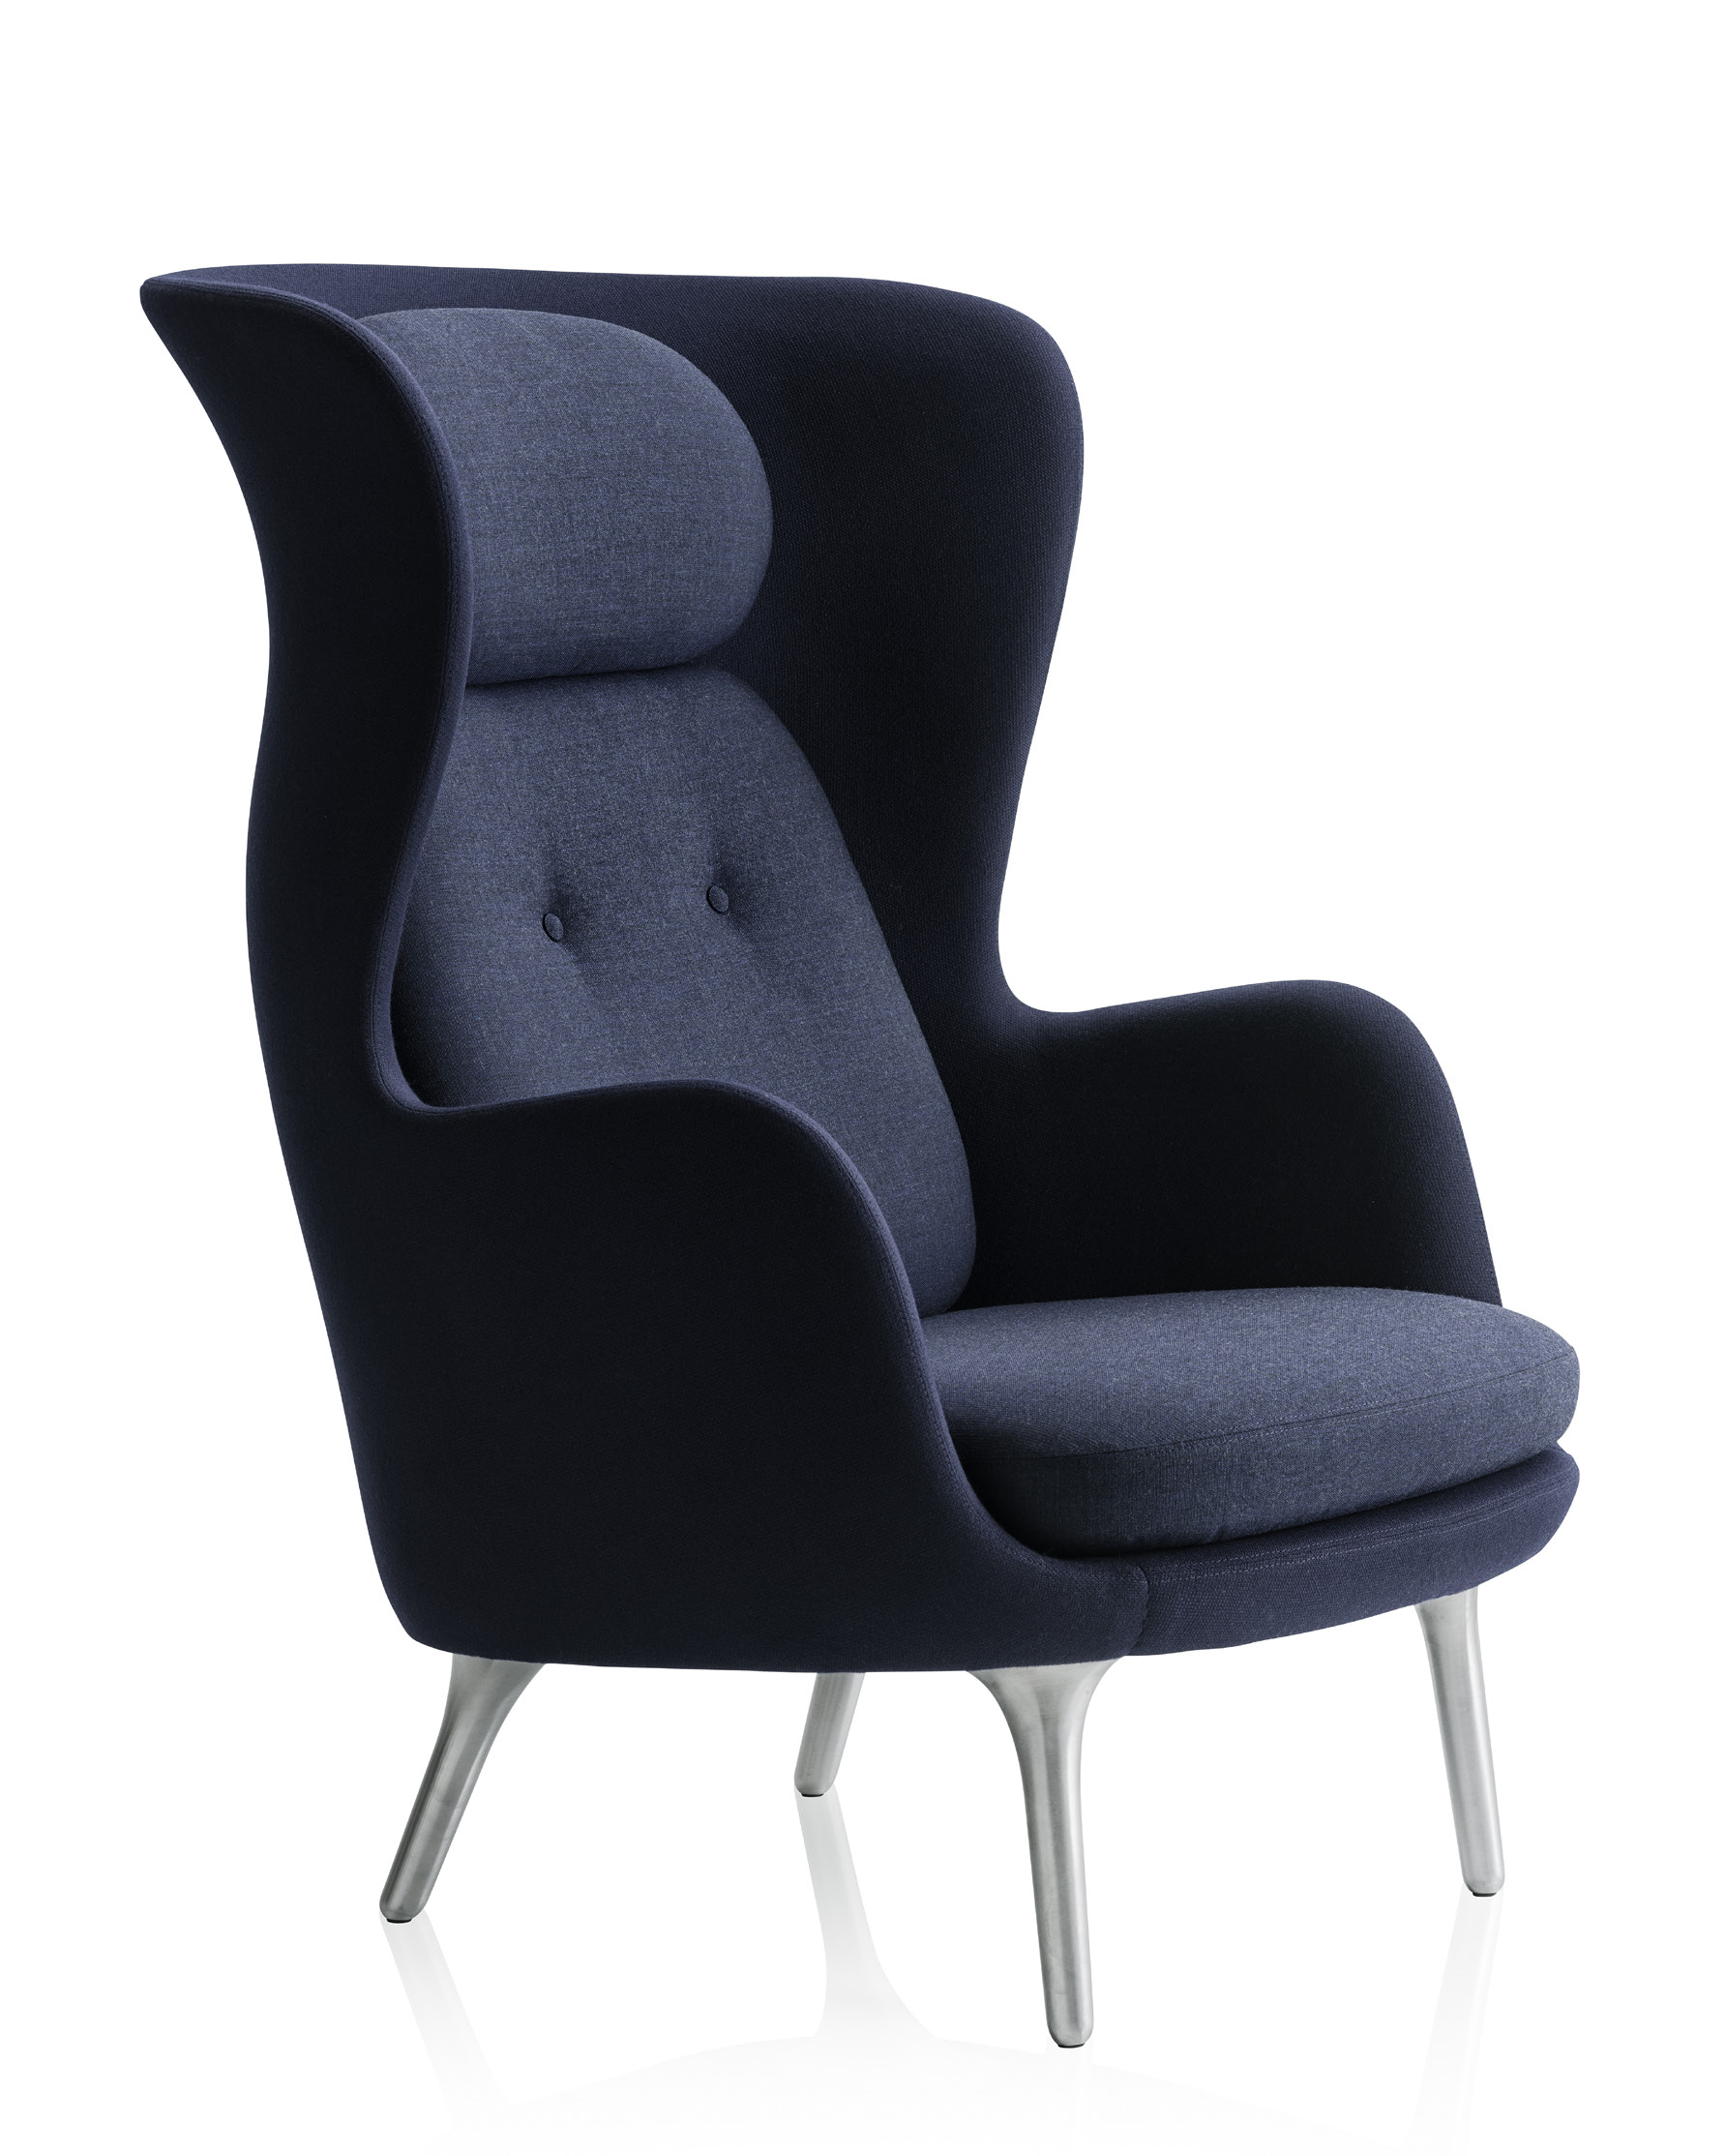 RO Ro ist ein schlichter Sessel designed von Jaime Hayon für Fritz Hansen Einige sehen einen schönen Sessel, andere sehen einen Rückzugsort